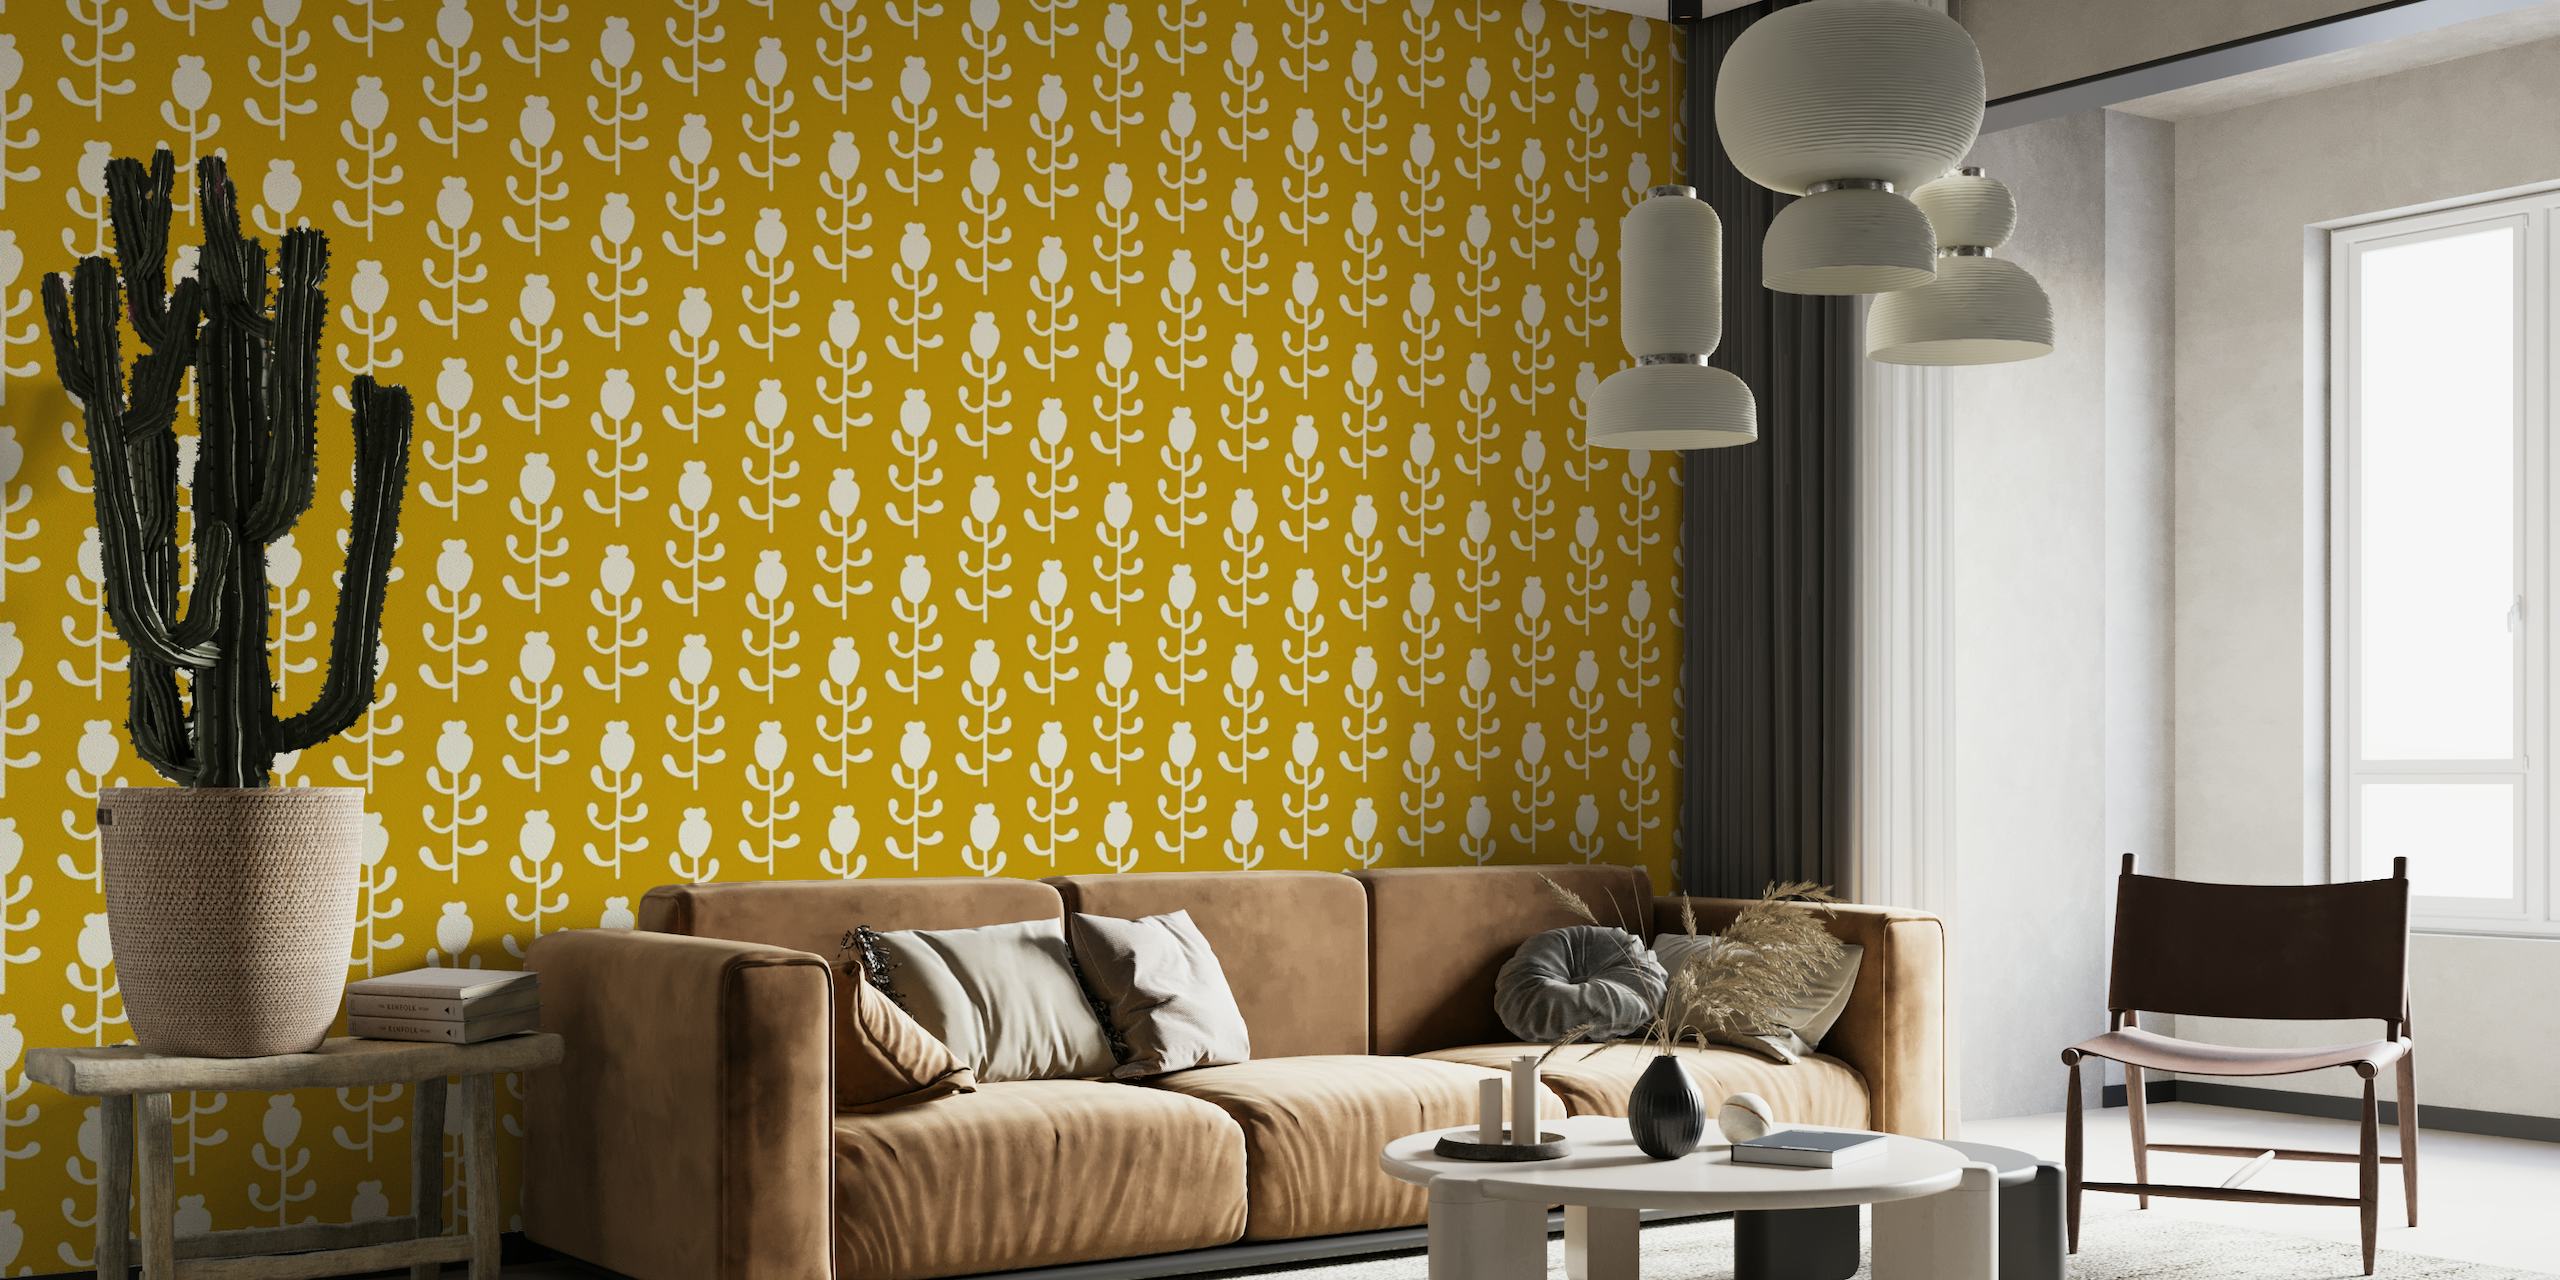 2569 - floral pattern, mustard yellow behang